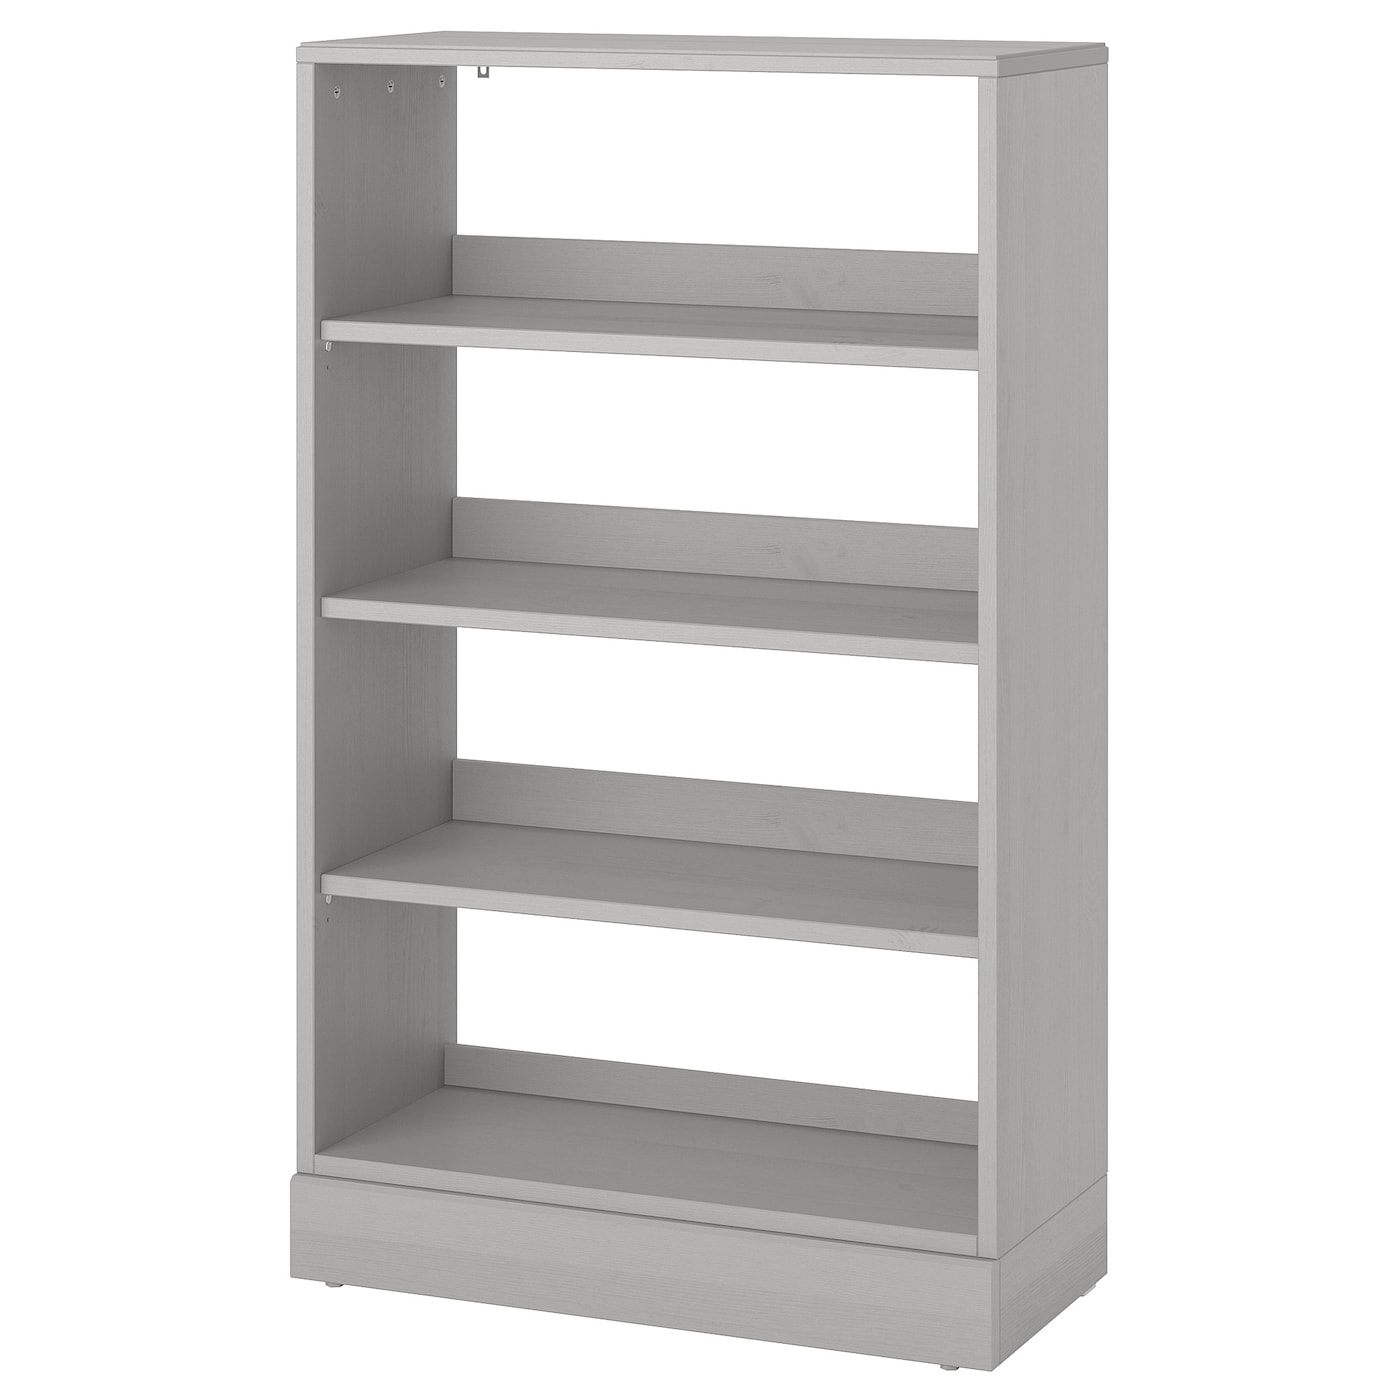 Книжный шкаф - HAVSTA IKEA/ ХАВСТА ИКЕА,  134х81 см, серый